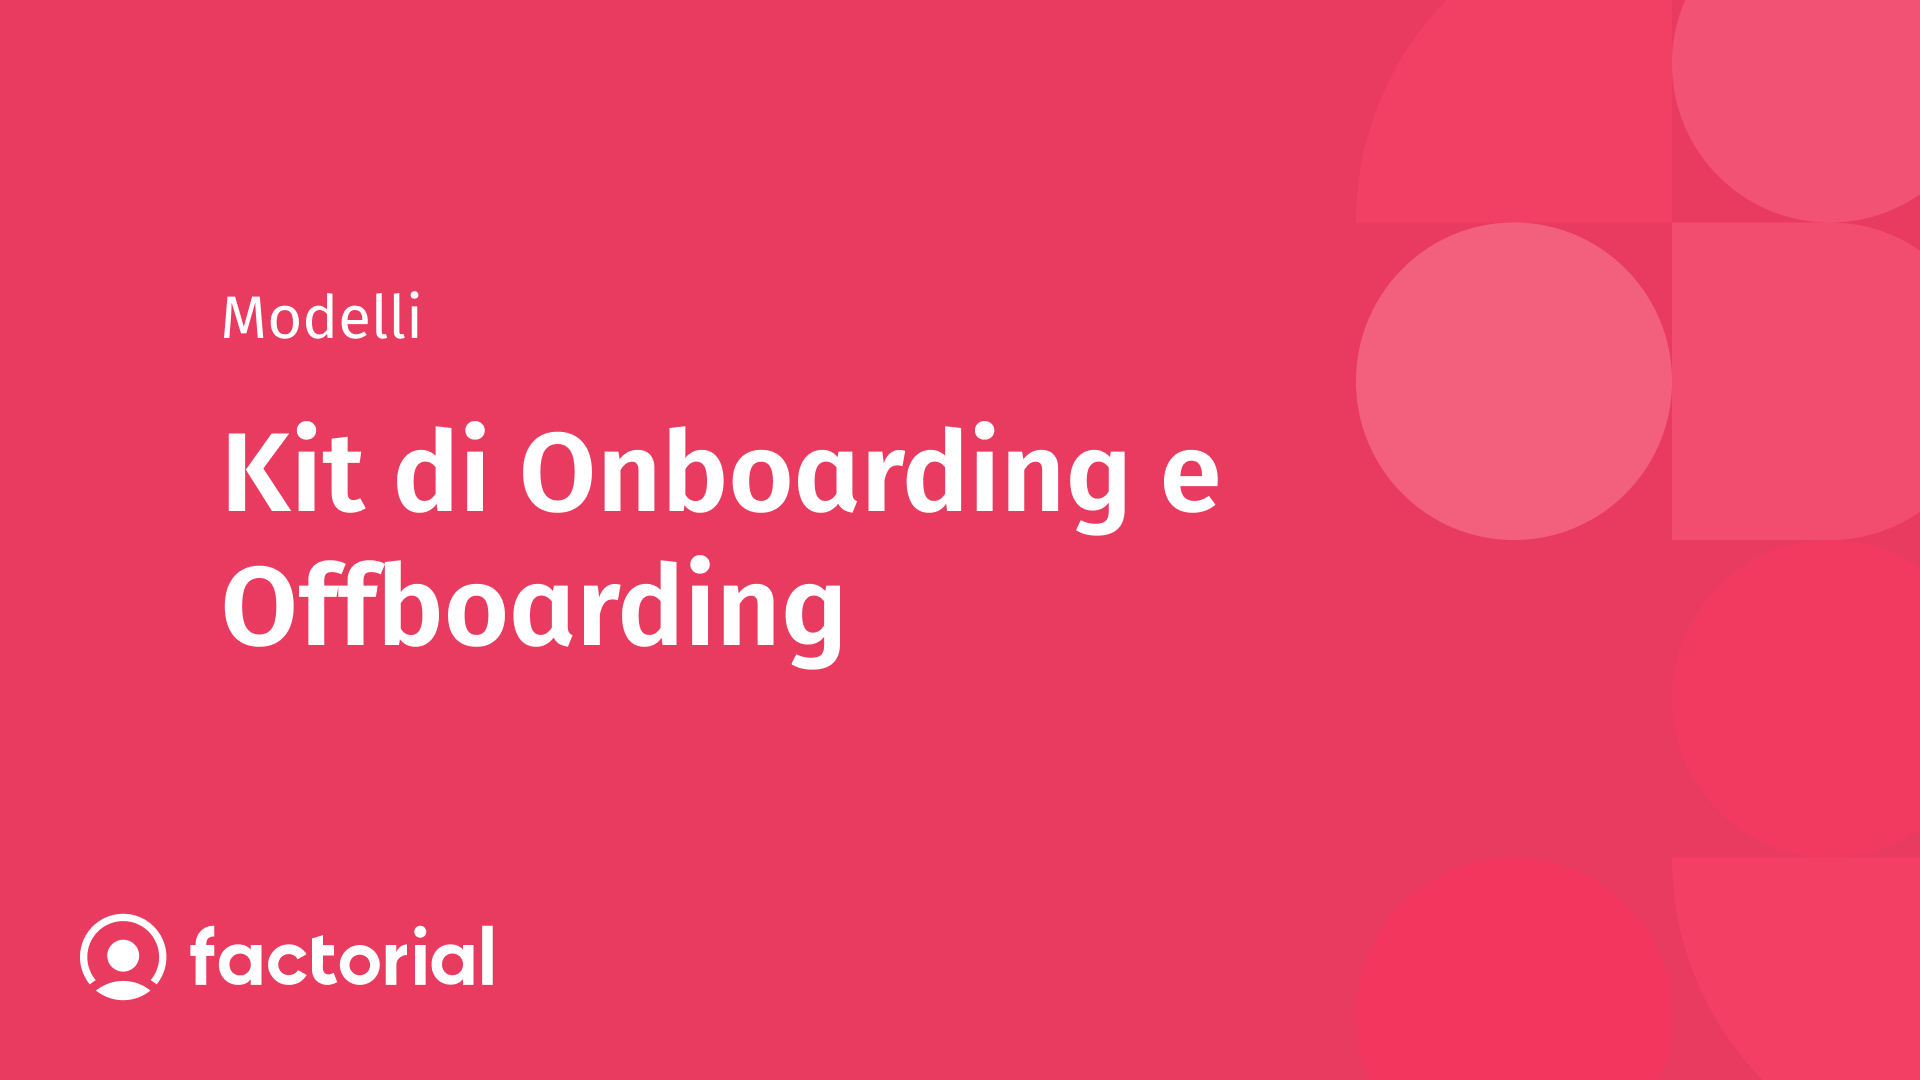 Un kit completo di risorse utili per gestire l'onboarding e l'offboarding dei dipendenti in azienda